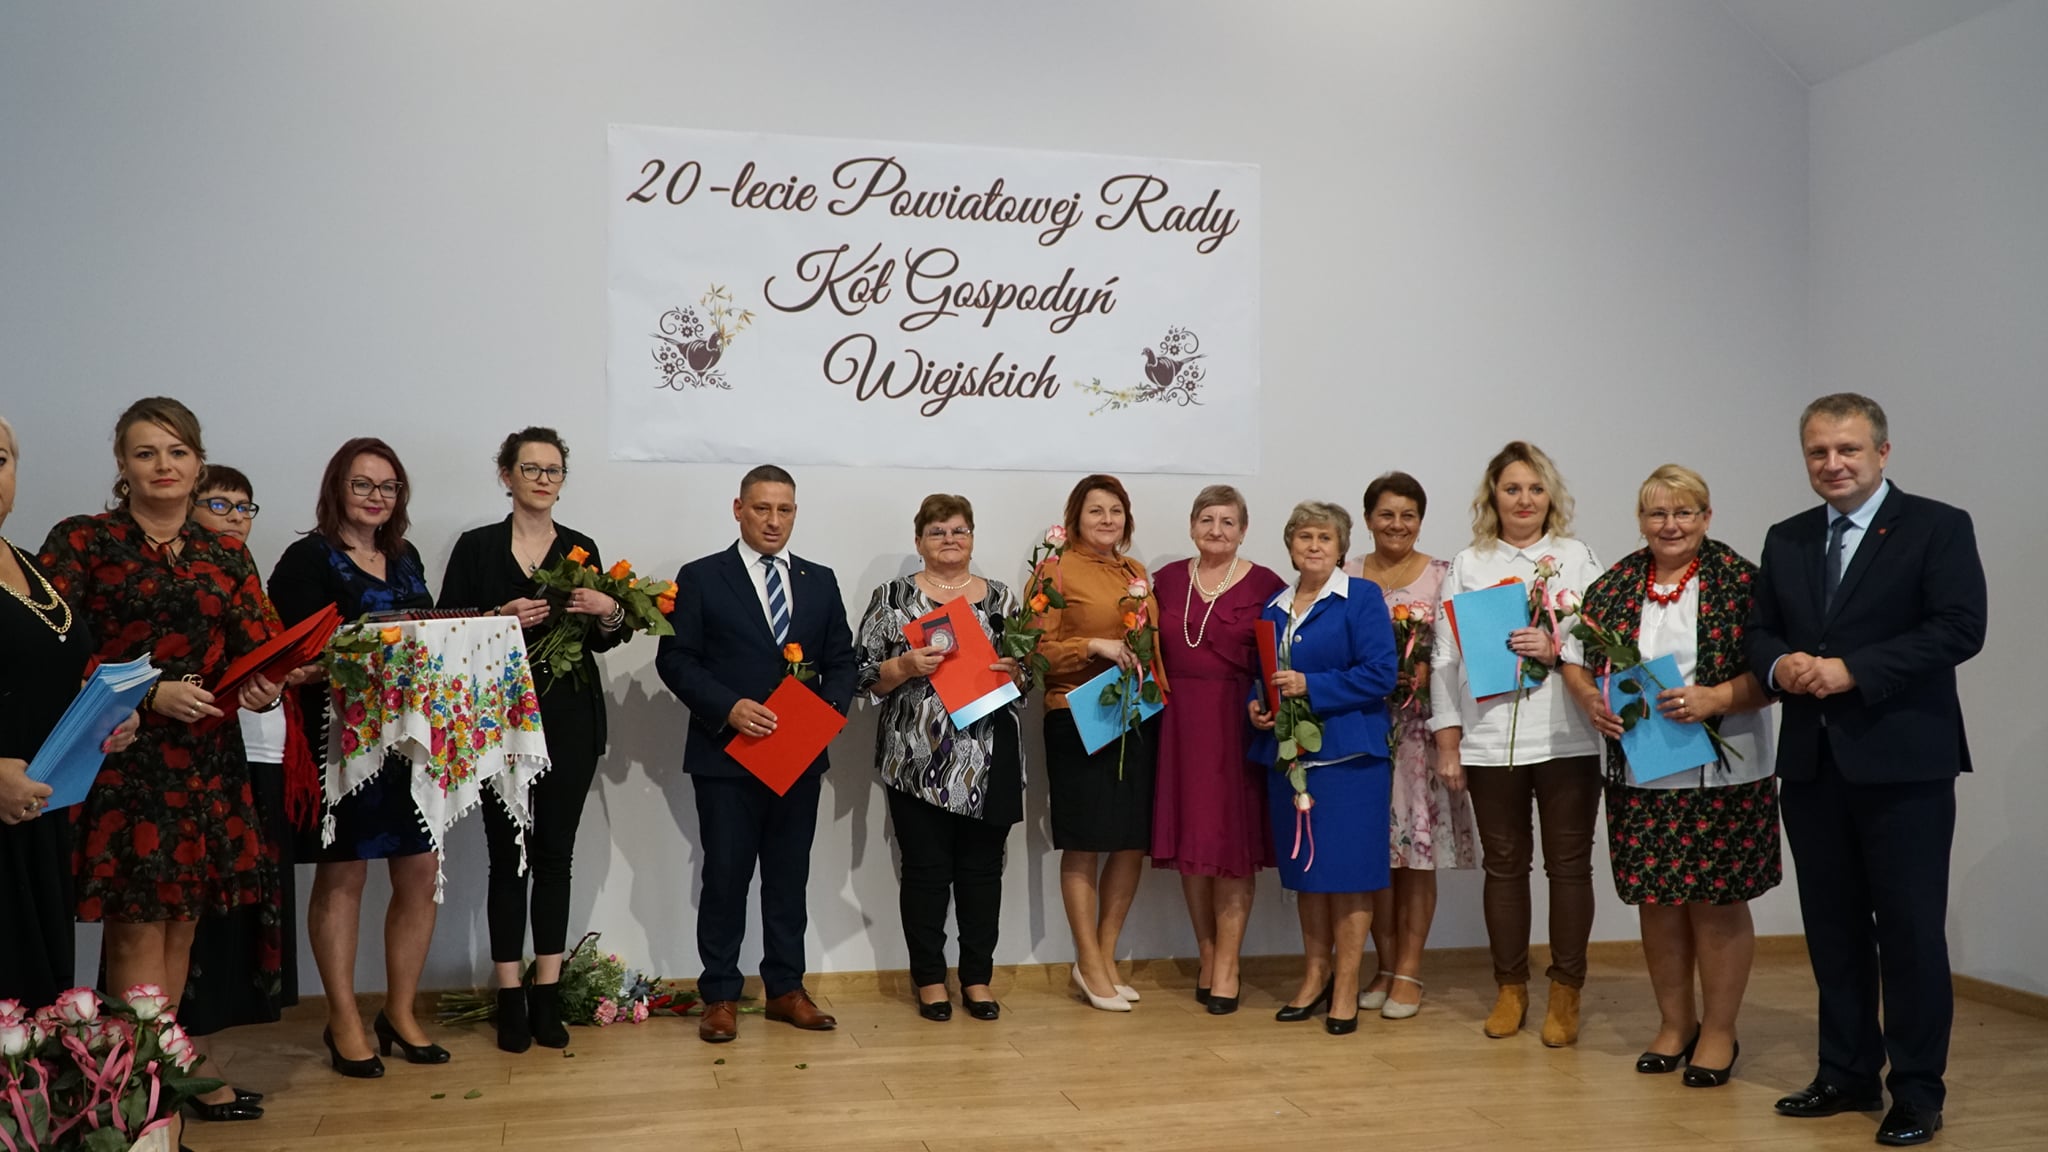 20-lecie Powiatowej Rady KGW w Bolesławcu